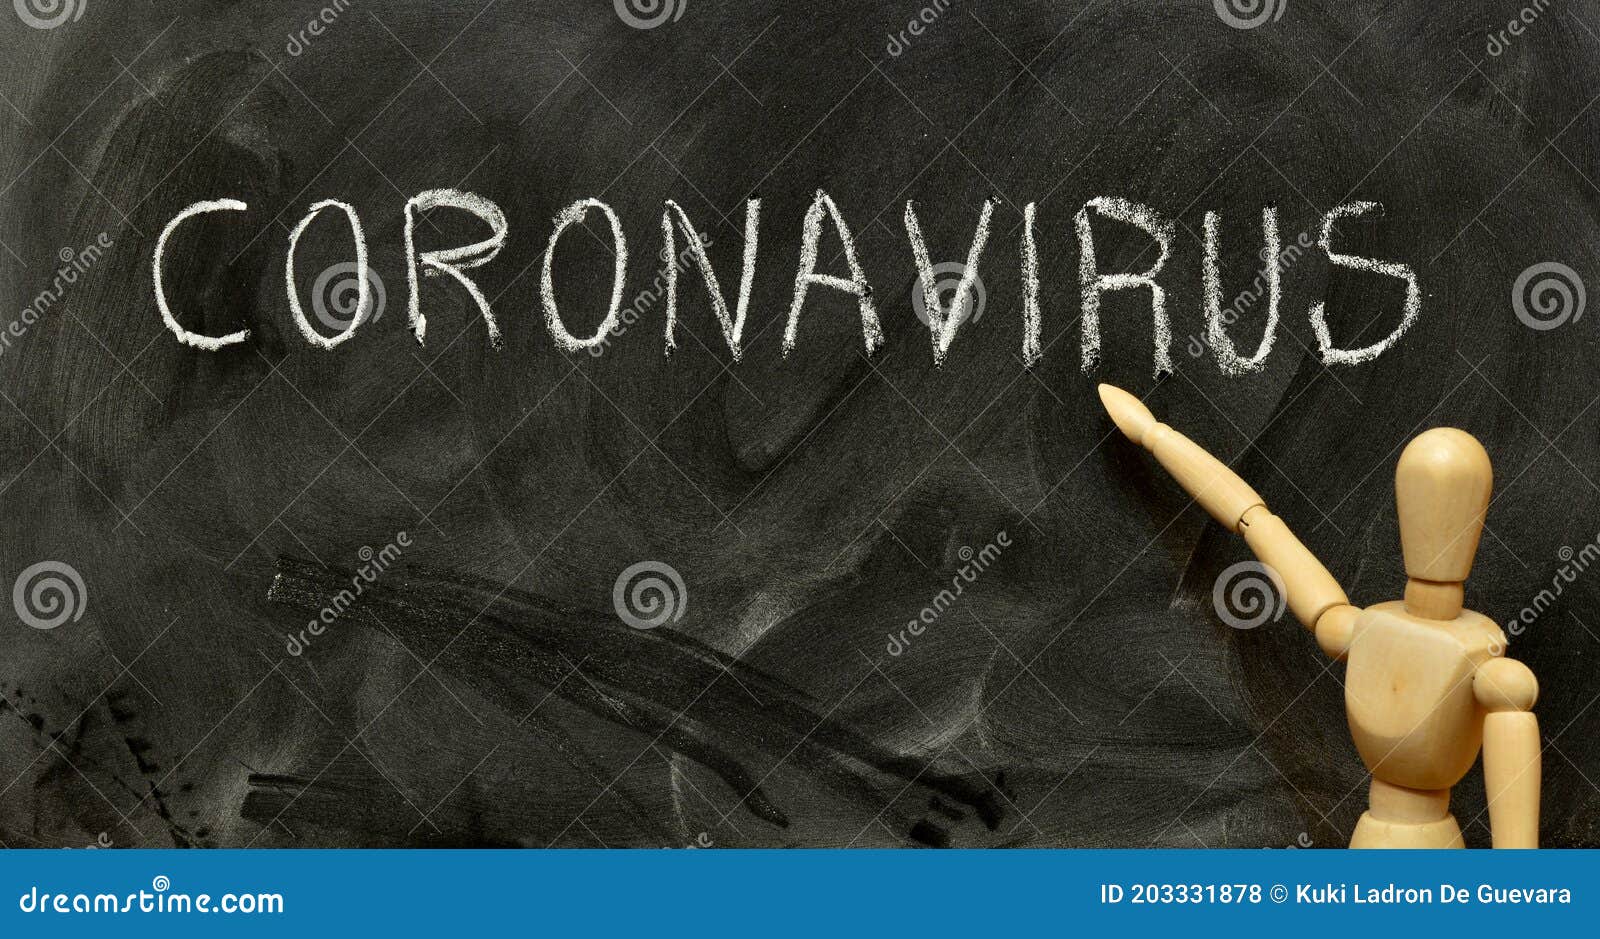 word coronavirus, written on the blackboard